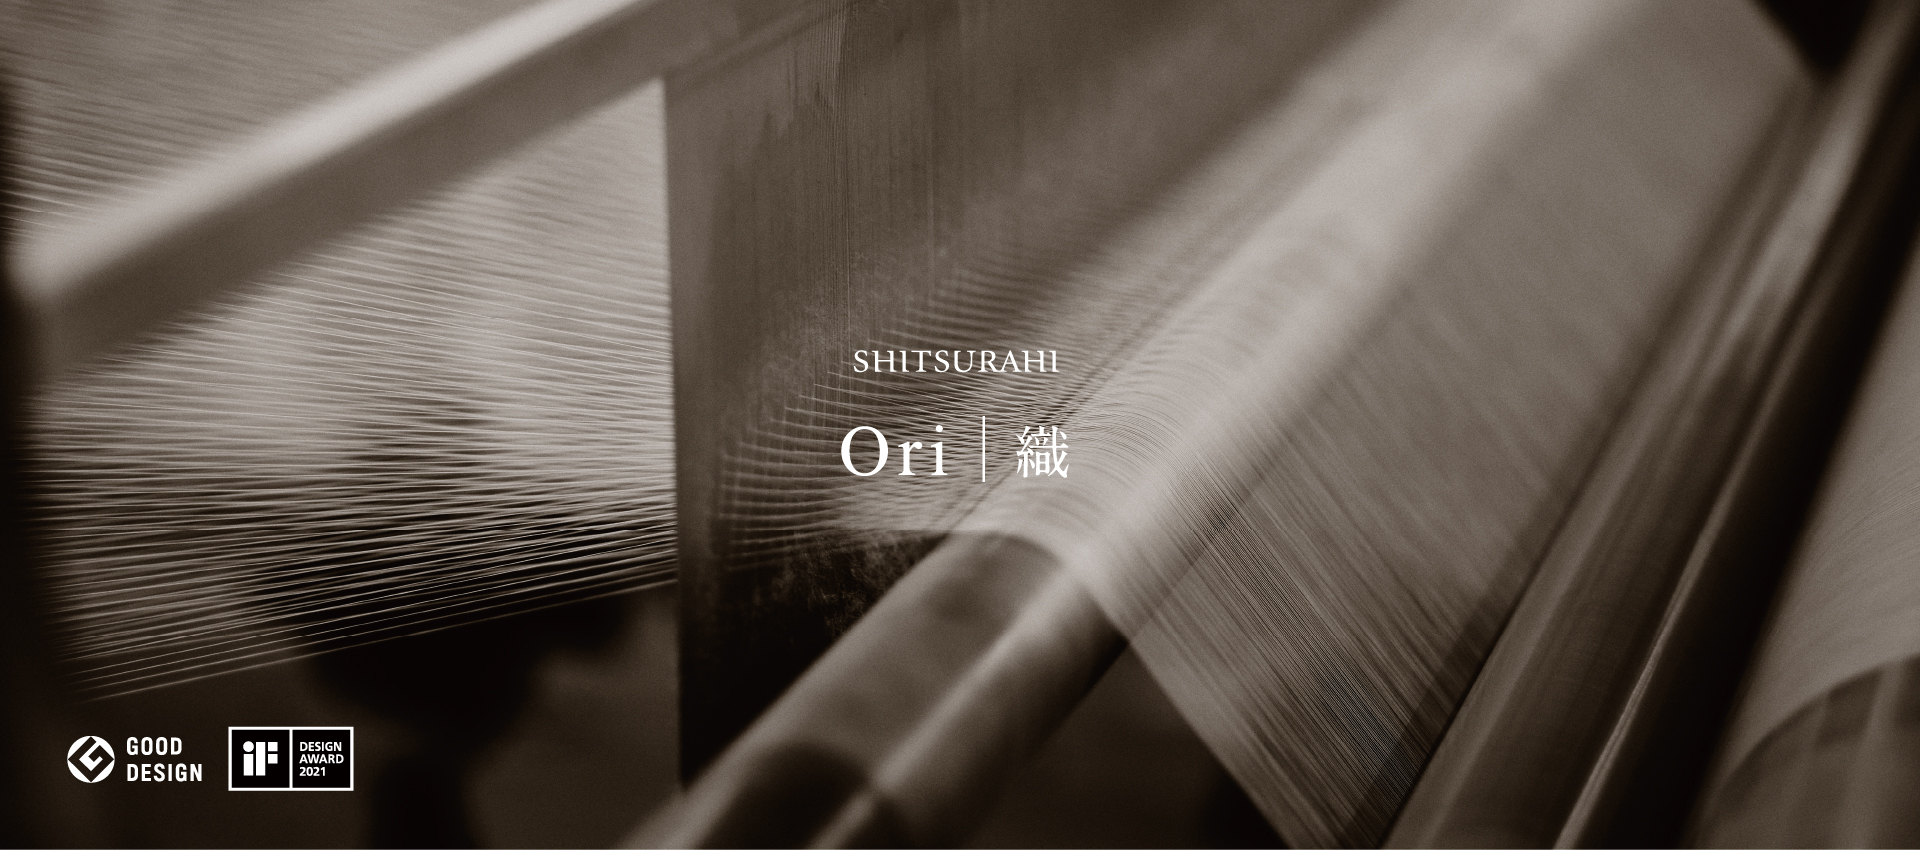 SHITSURAHI Ori 織